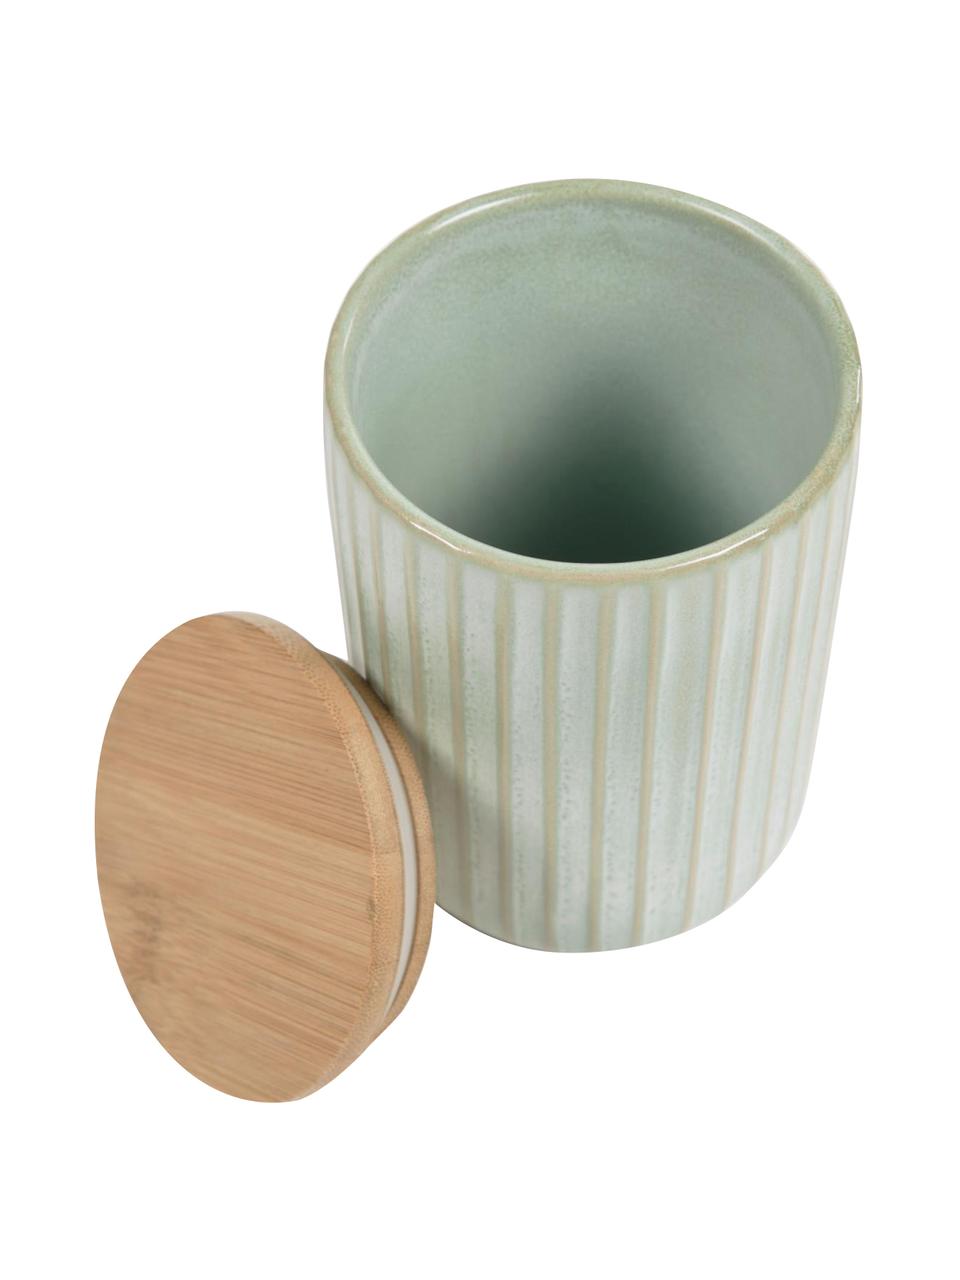 Aufbewahrungsdose Itziar aus Keramik in Hellgrün, verschiedene Größen, Dose: Keramik, Deckel: Holz, Hellgrün, Ø 10 x H 14 cm, 700 ml